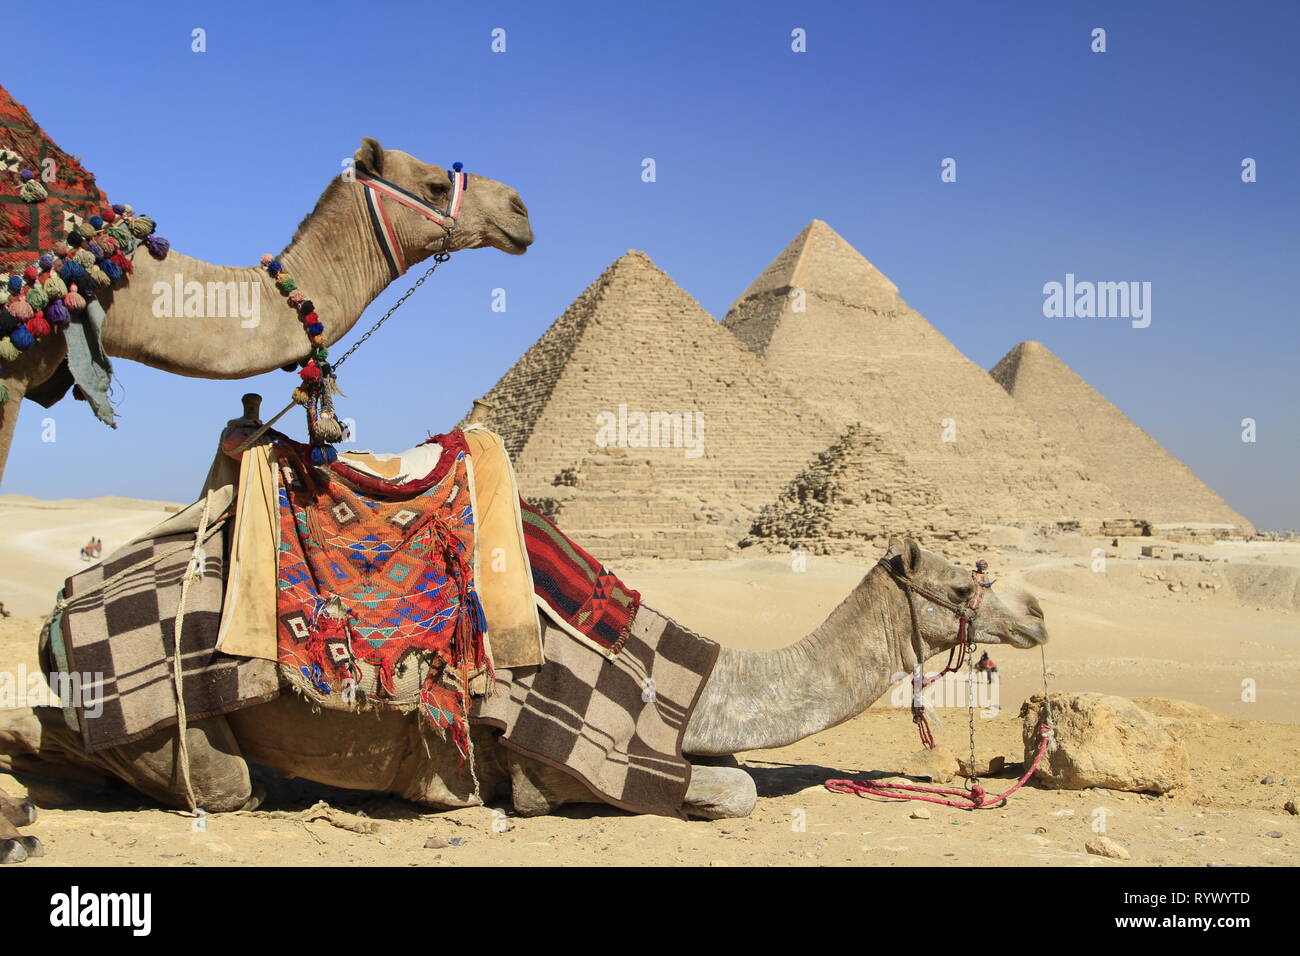 Les chameaux bâtés colorés à un belvédère avec vue sur les pyramides de l'Égypte, Giza, Le Caire, Egypte Banque D'Images